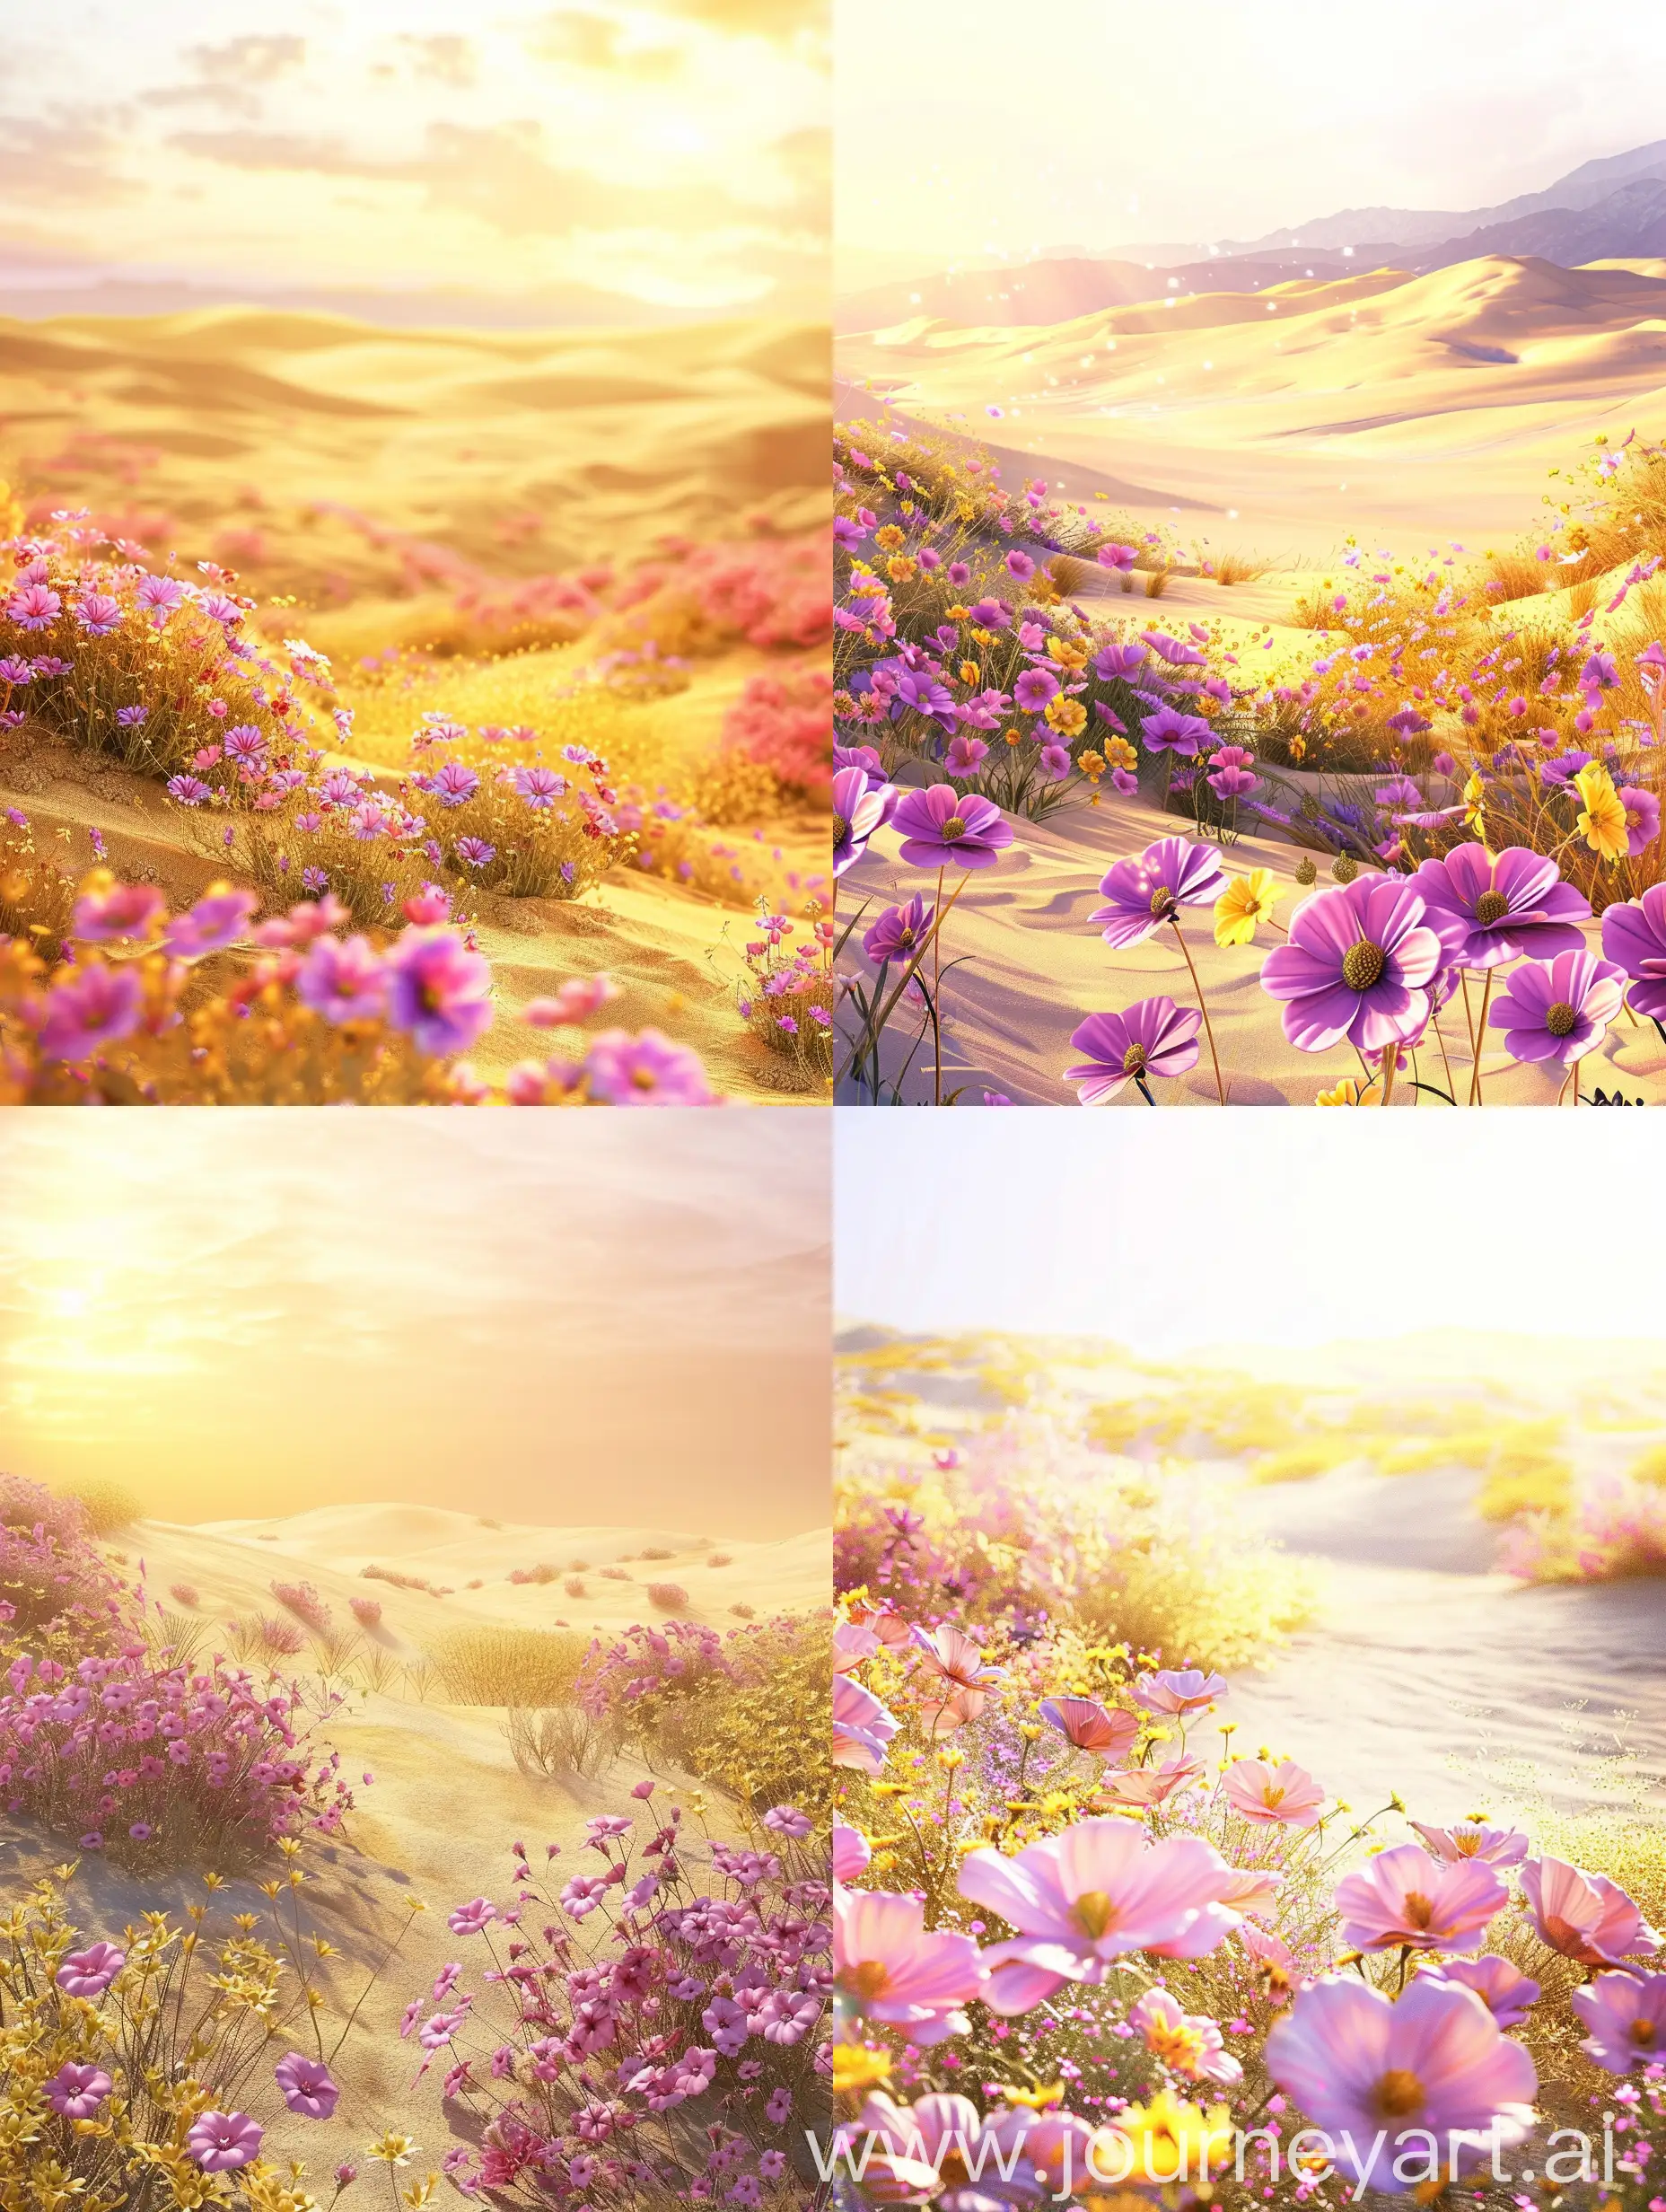 Vibrant-Sunset-Blossoms-in-a-Lush-Desert-Garden